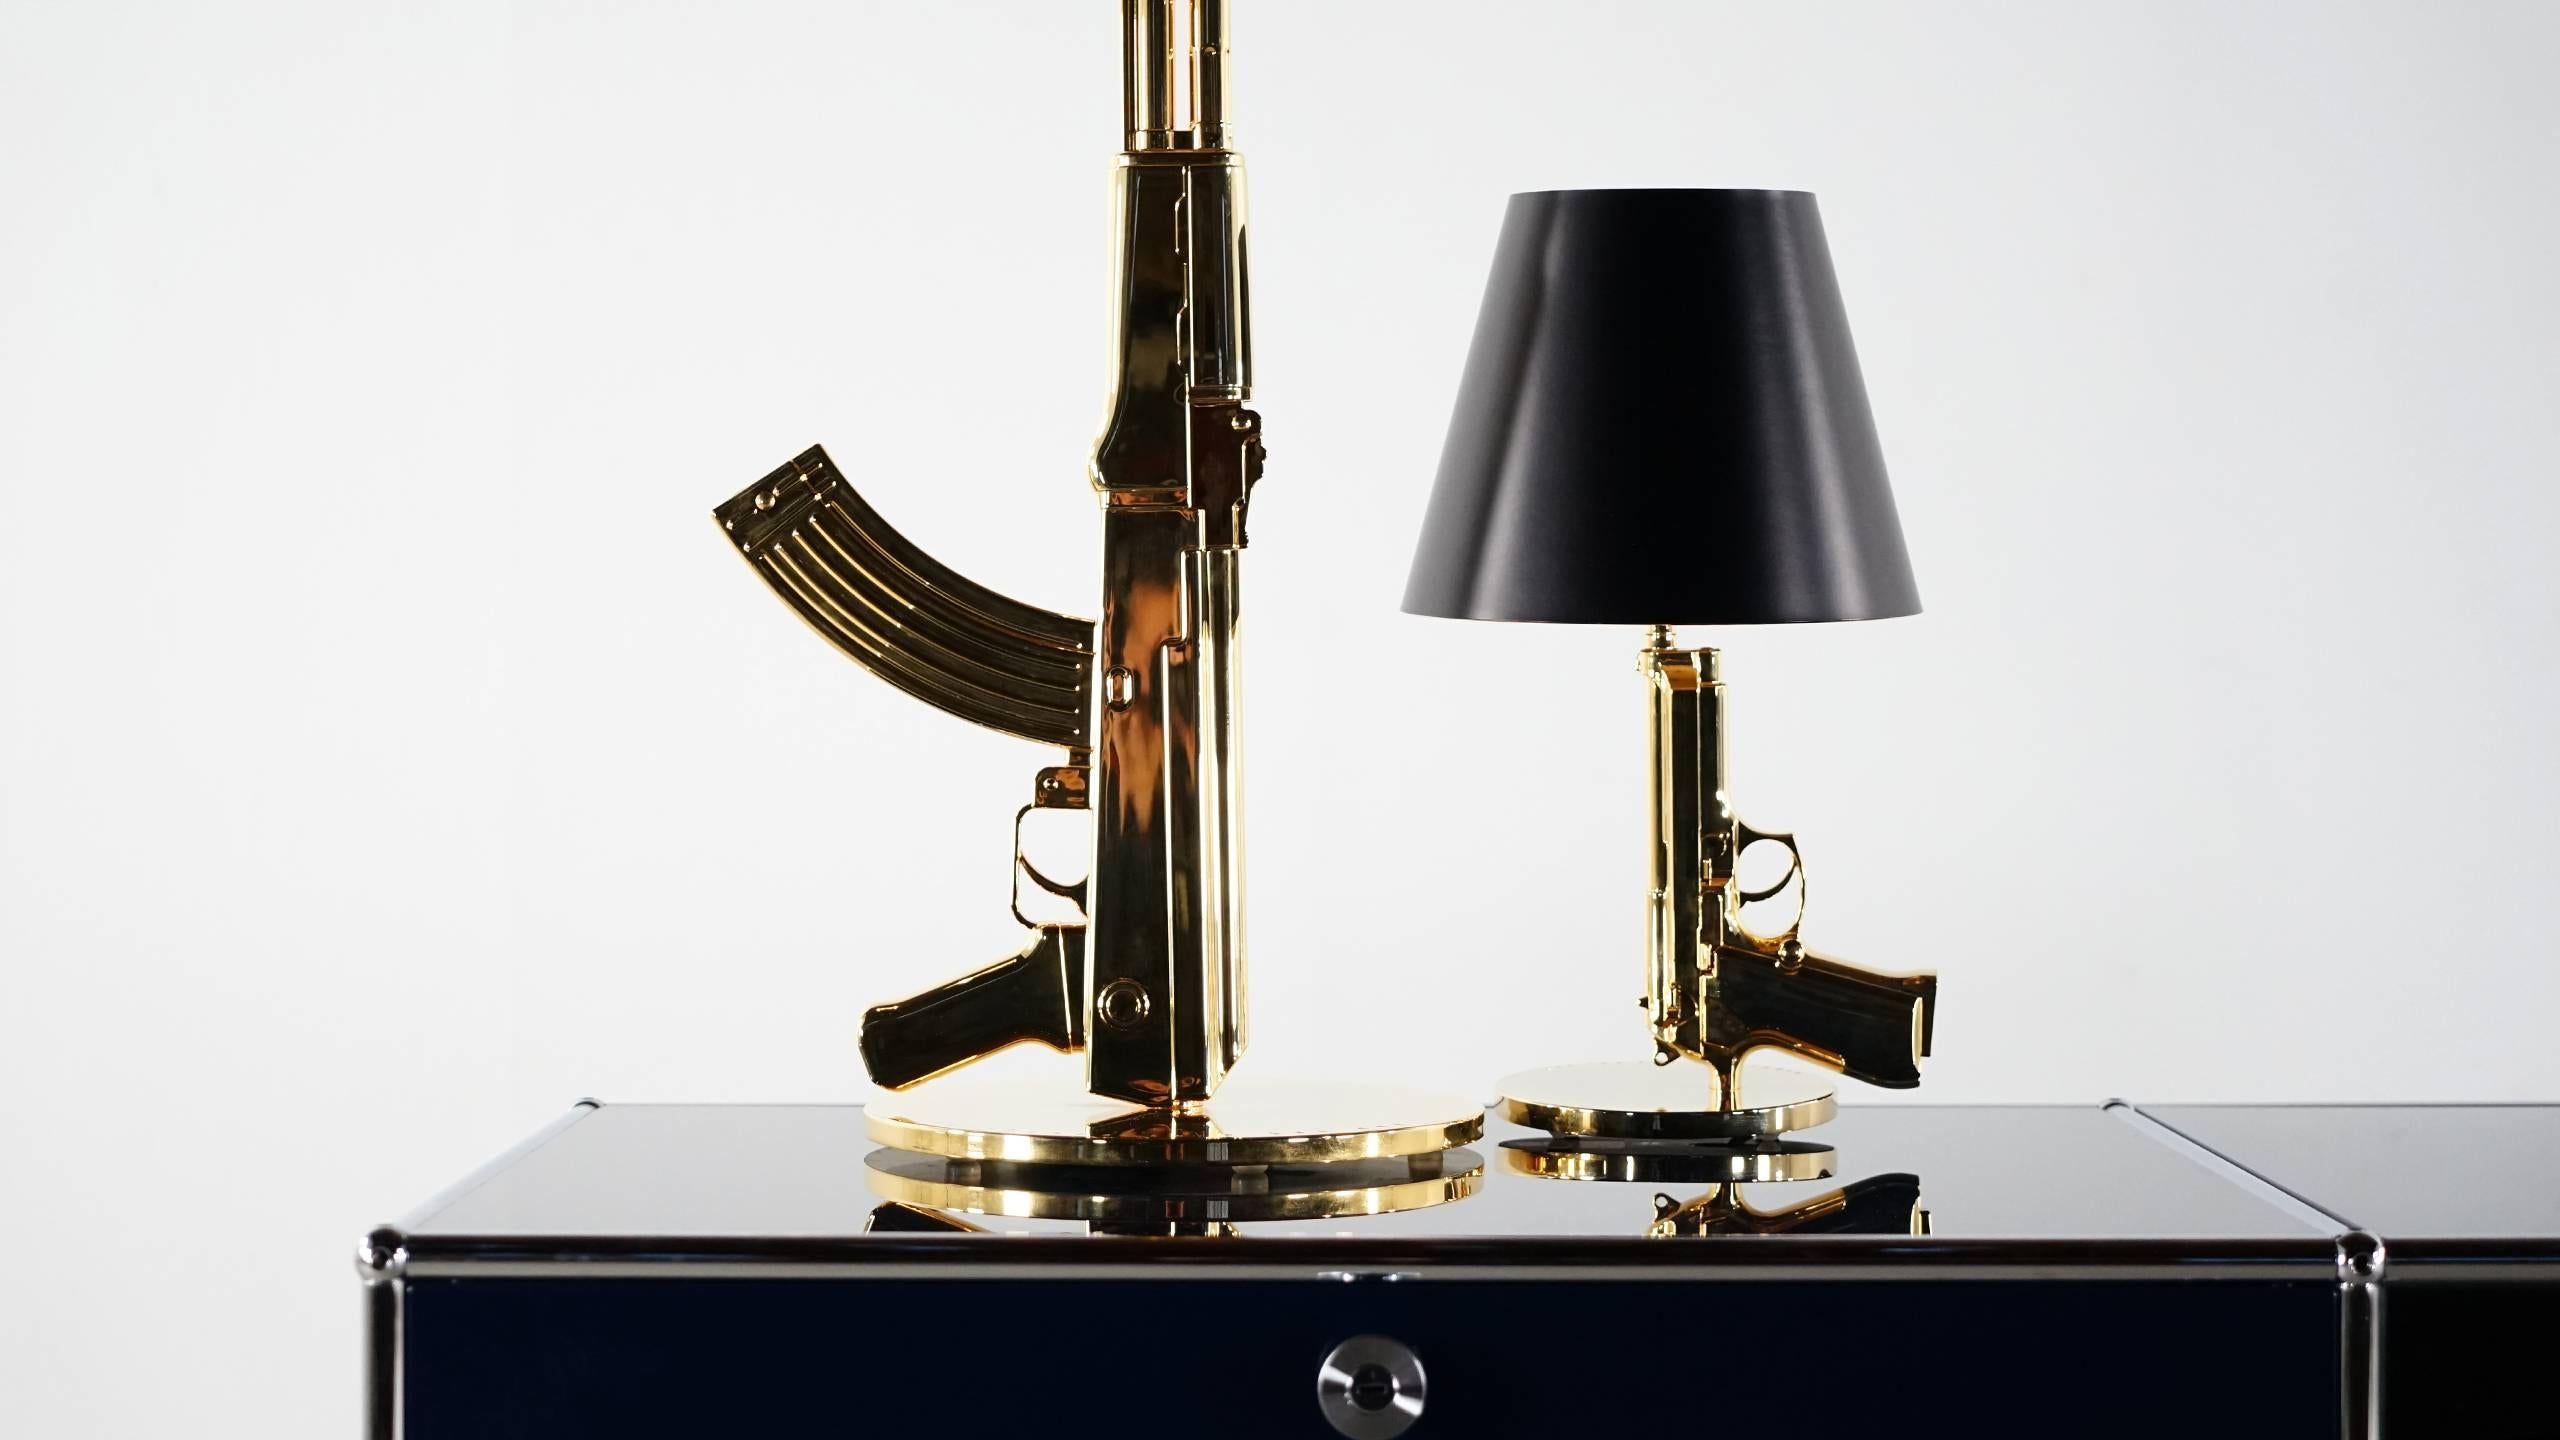 Voici une lampe légendaire de Philippe Starck pour Flos. 
en aluminium avec un couvercle en or 18 carats. Parfait état !

l'offre est pour le pistolet de chevet:: qui mesure environ 42::6cm de haut:: le pistolet de table AK47 est vendu... 
Flos -